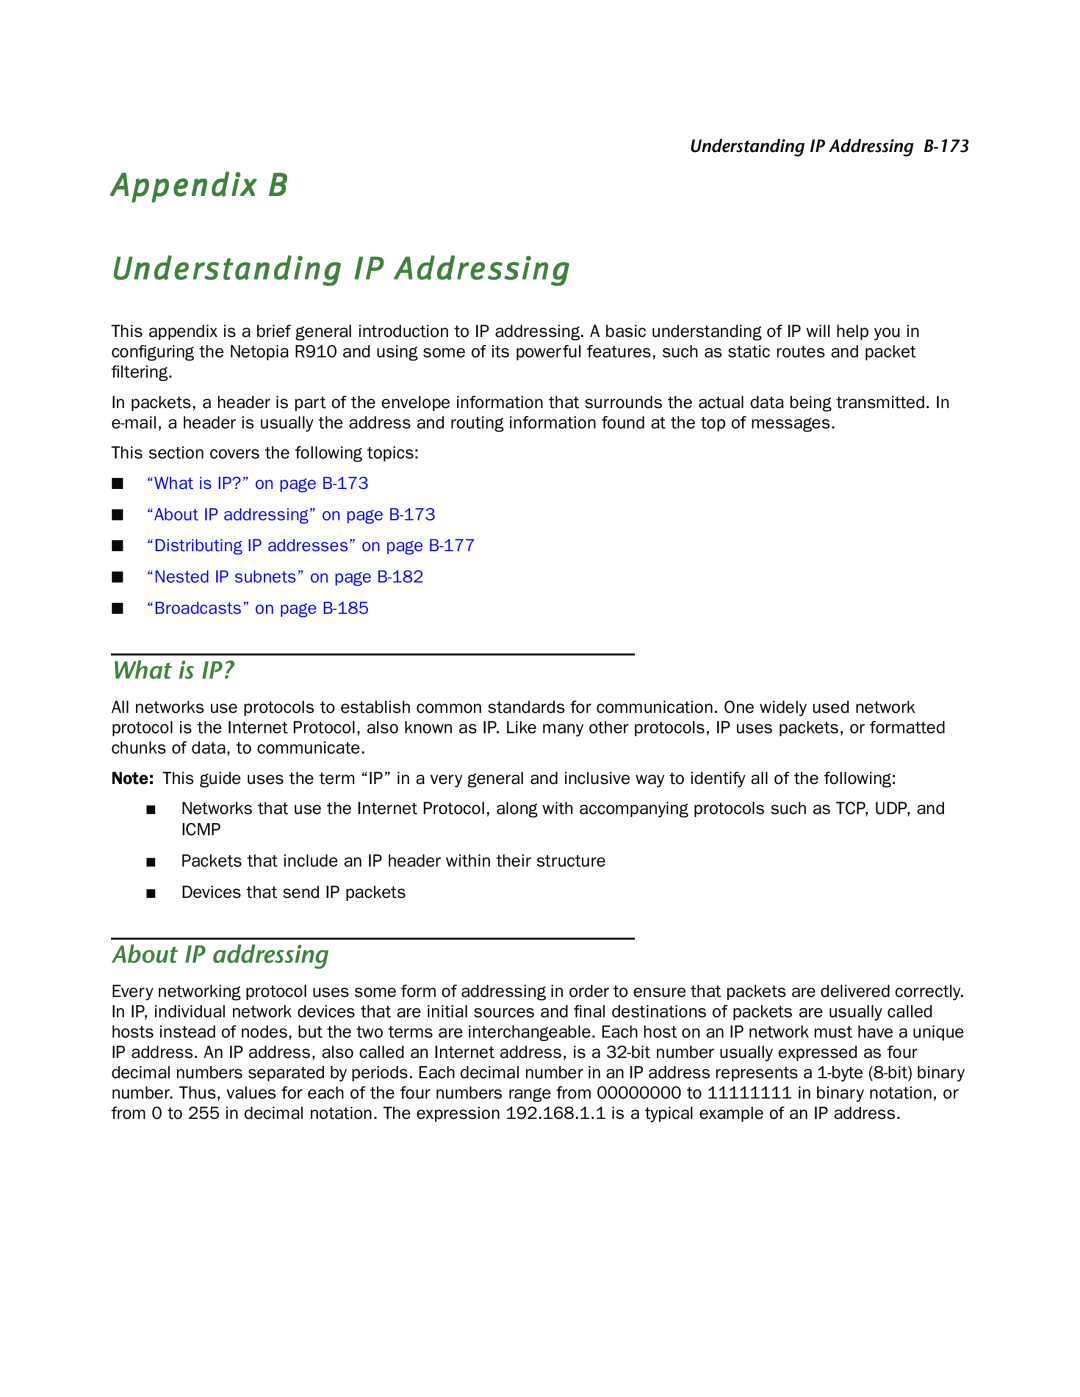 Netopia R910 Appendix B Understanding IP Addressing, What is IP?, About IP addressing, Understanding IP Addressing B-173 